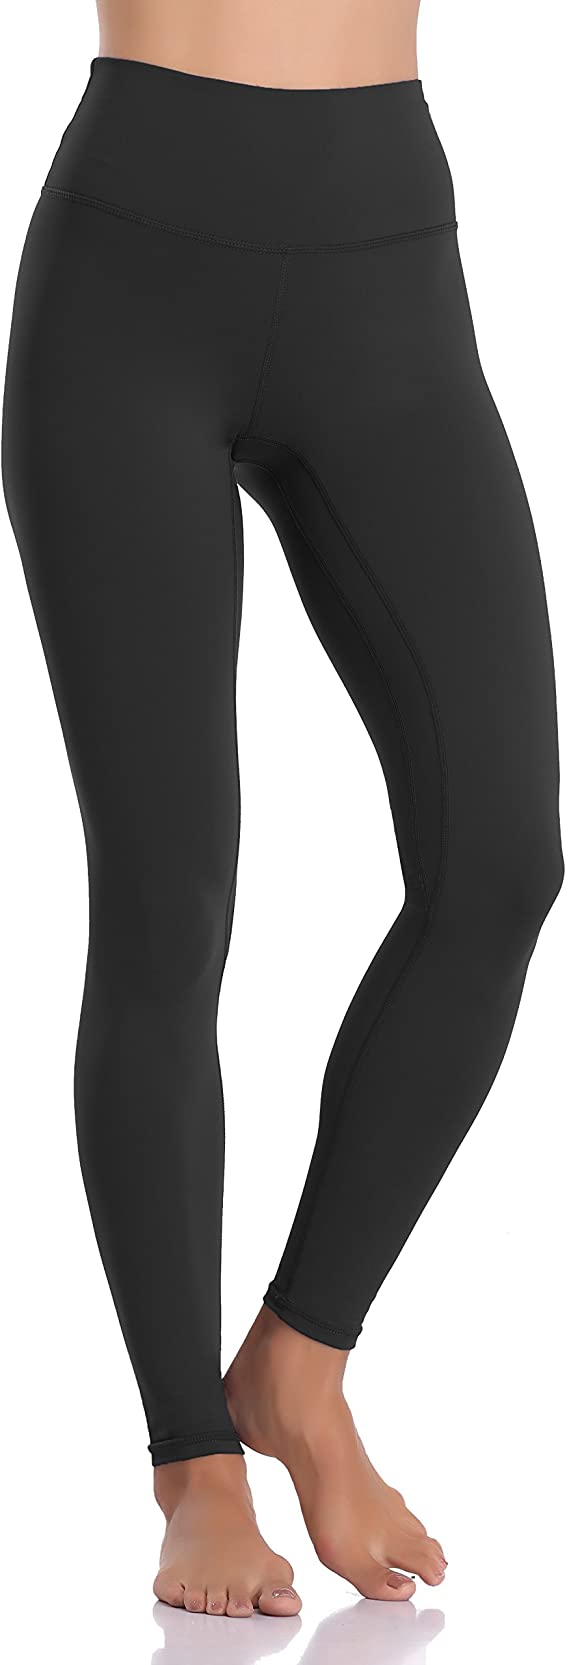 Colorfulkoala Nylon Moisture-Wicking Black Leggings For Women